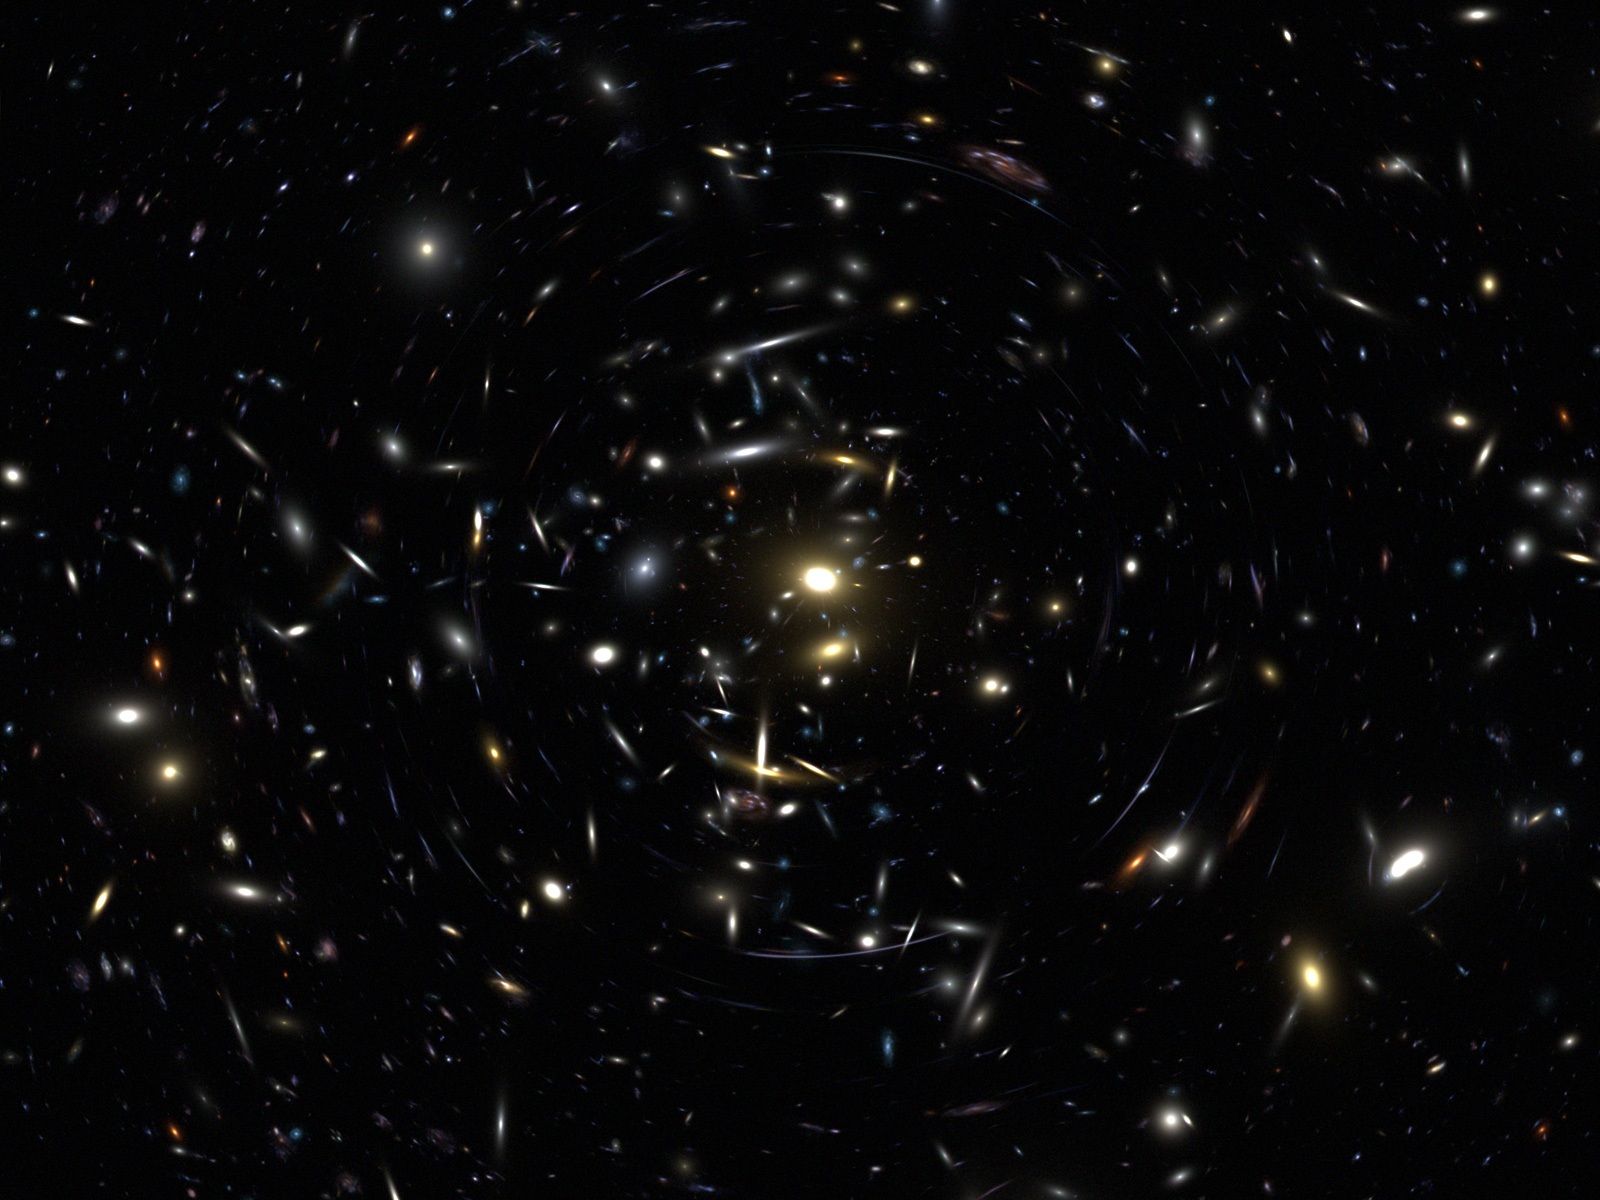 Hubble Deep Field View